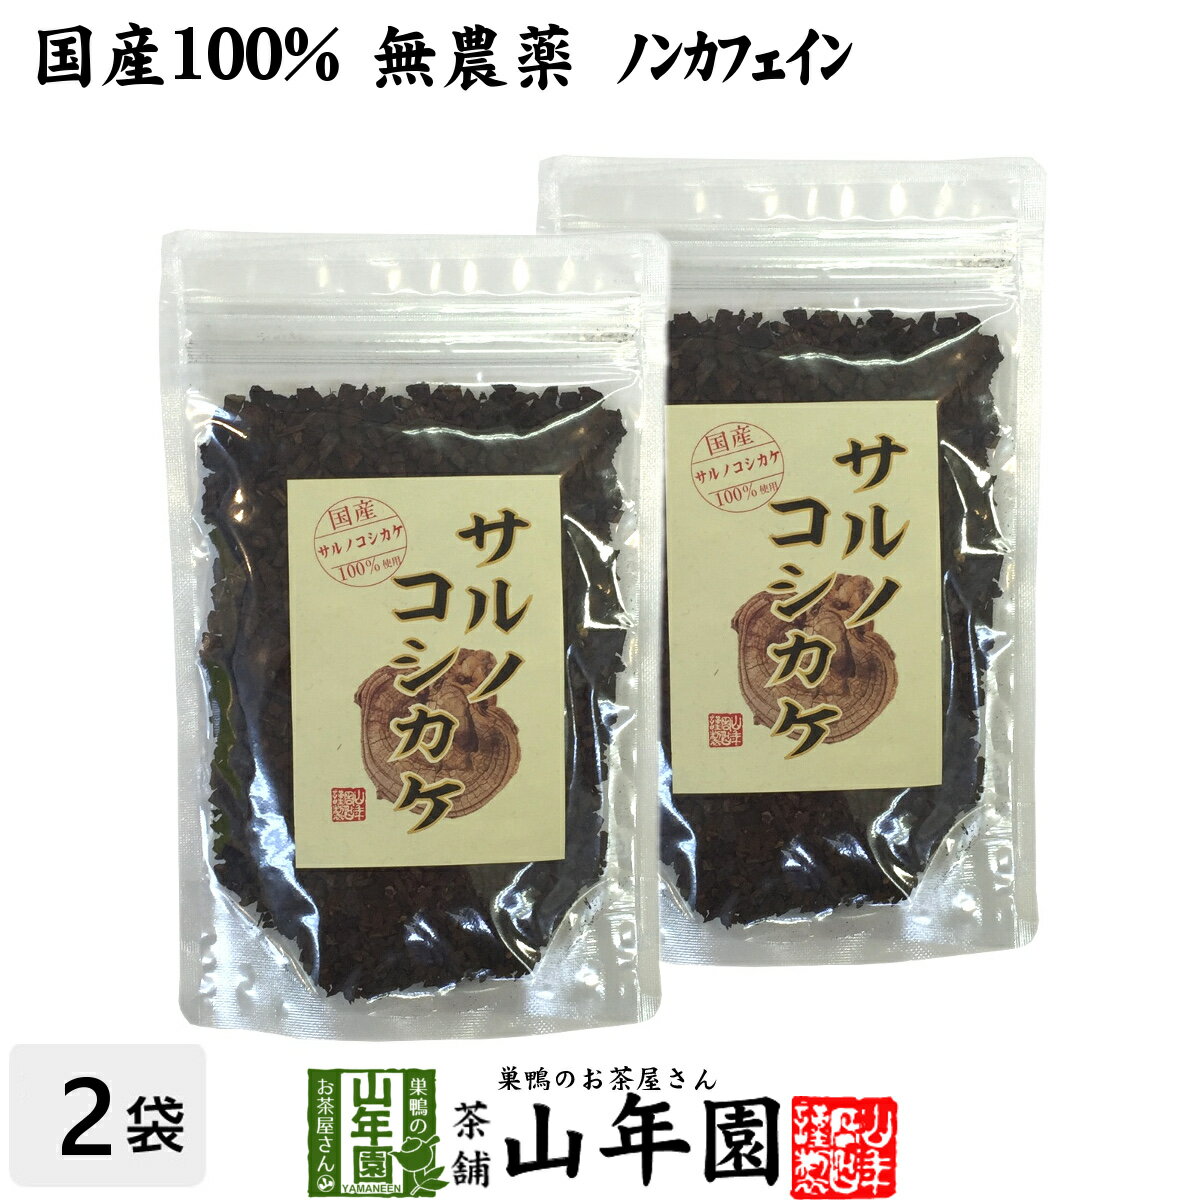 【国産 100%】サルノコシカケ茶 70g×2